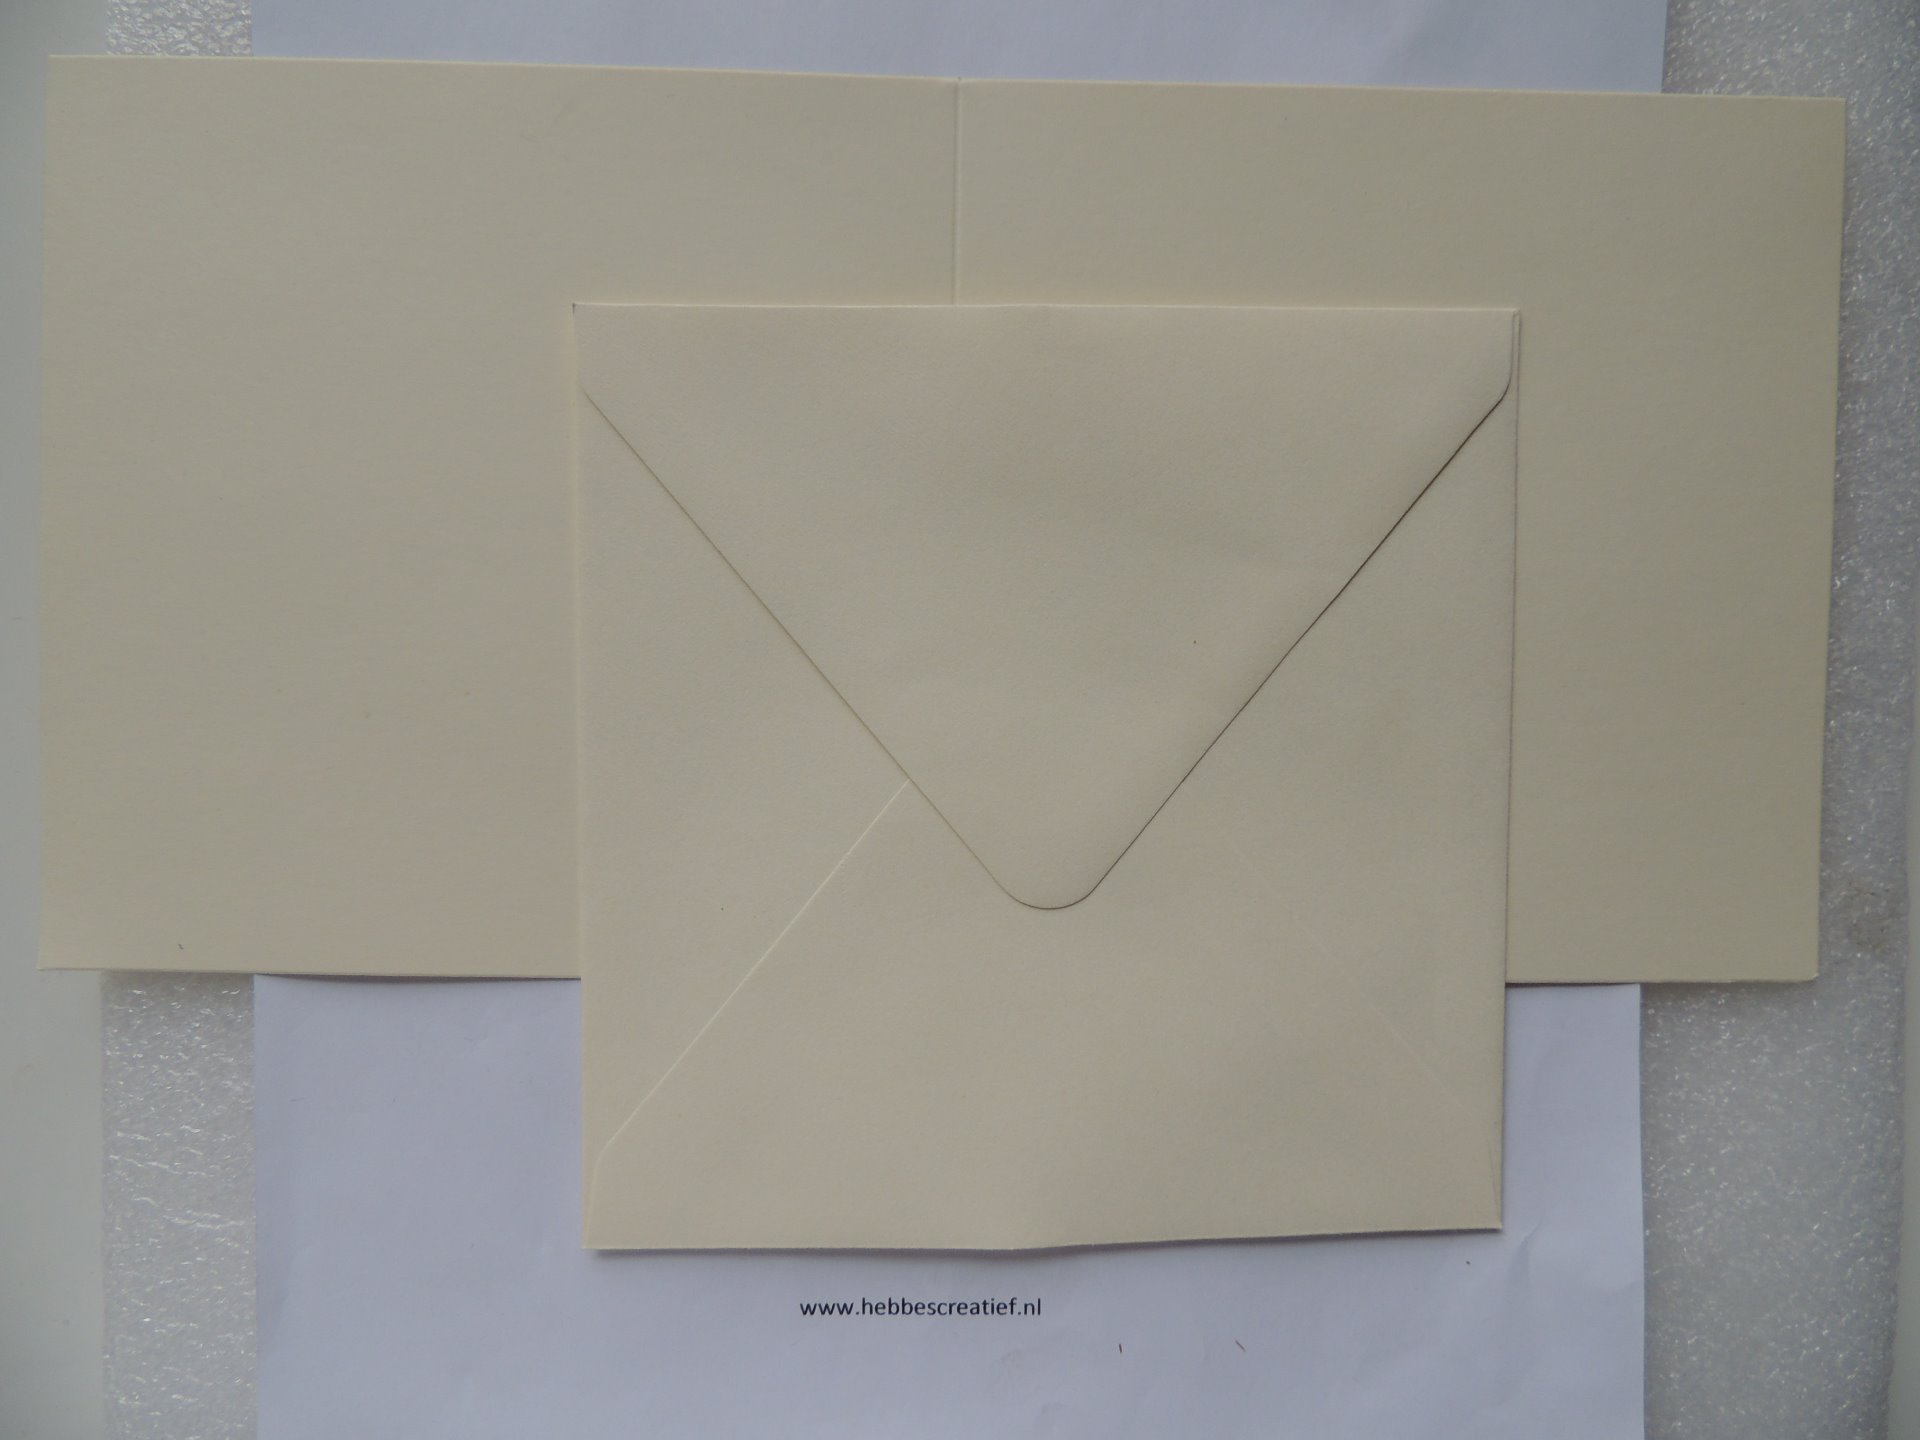 Vakantie Clam Experiment vierkante, dubbele,blanco, creme-kleurige kaart met envelop, per stuk. -  Hebbes! creatieve materialen